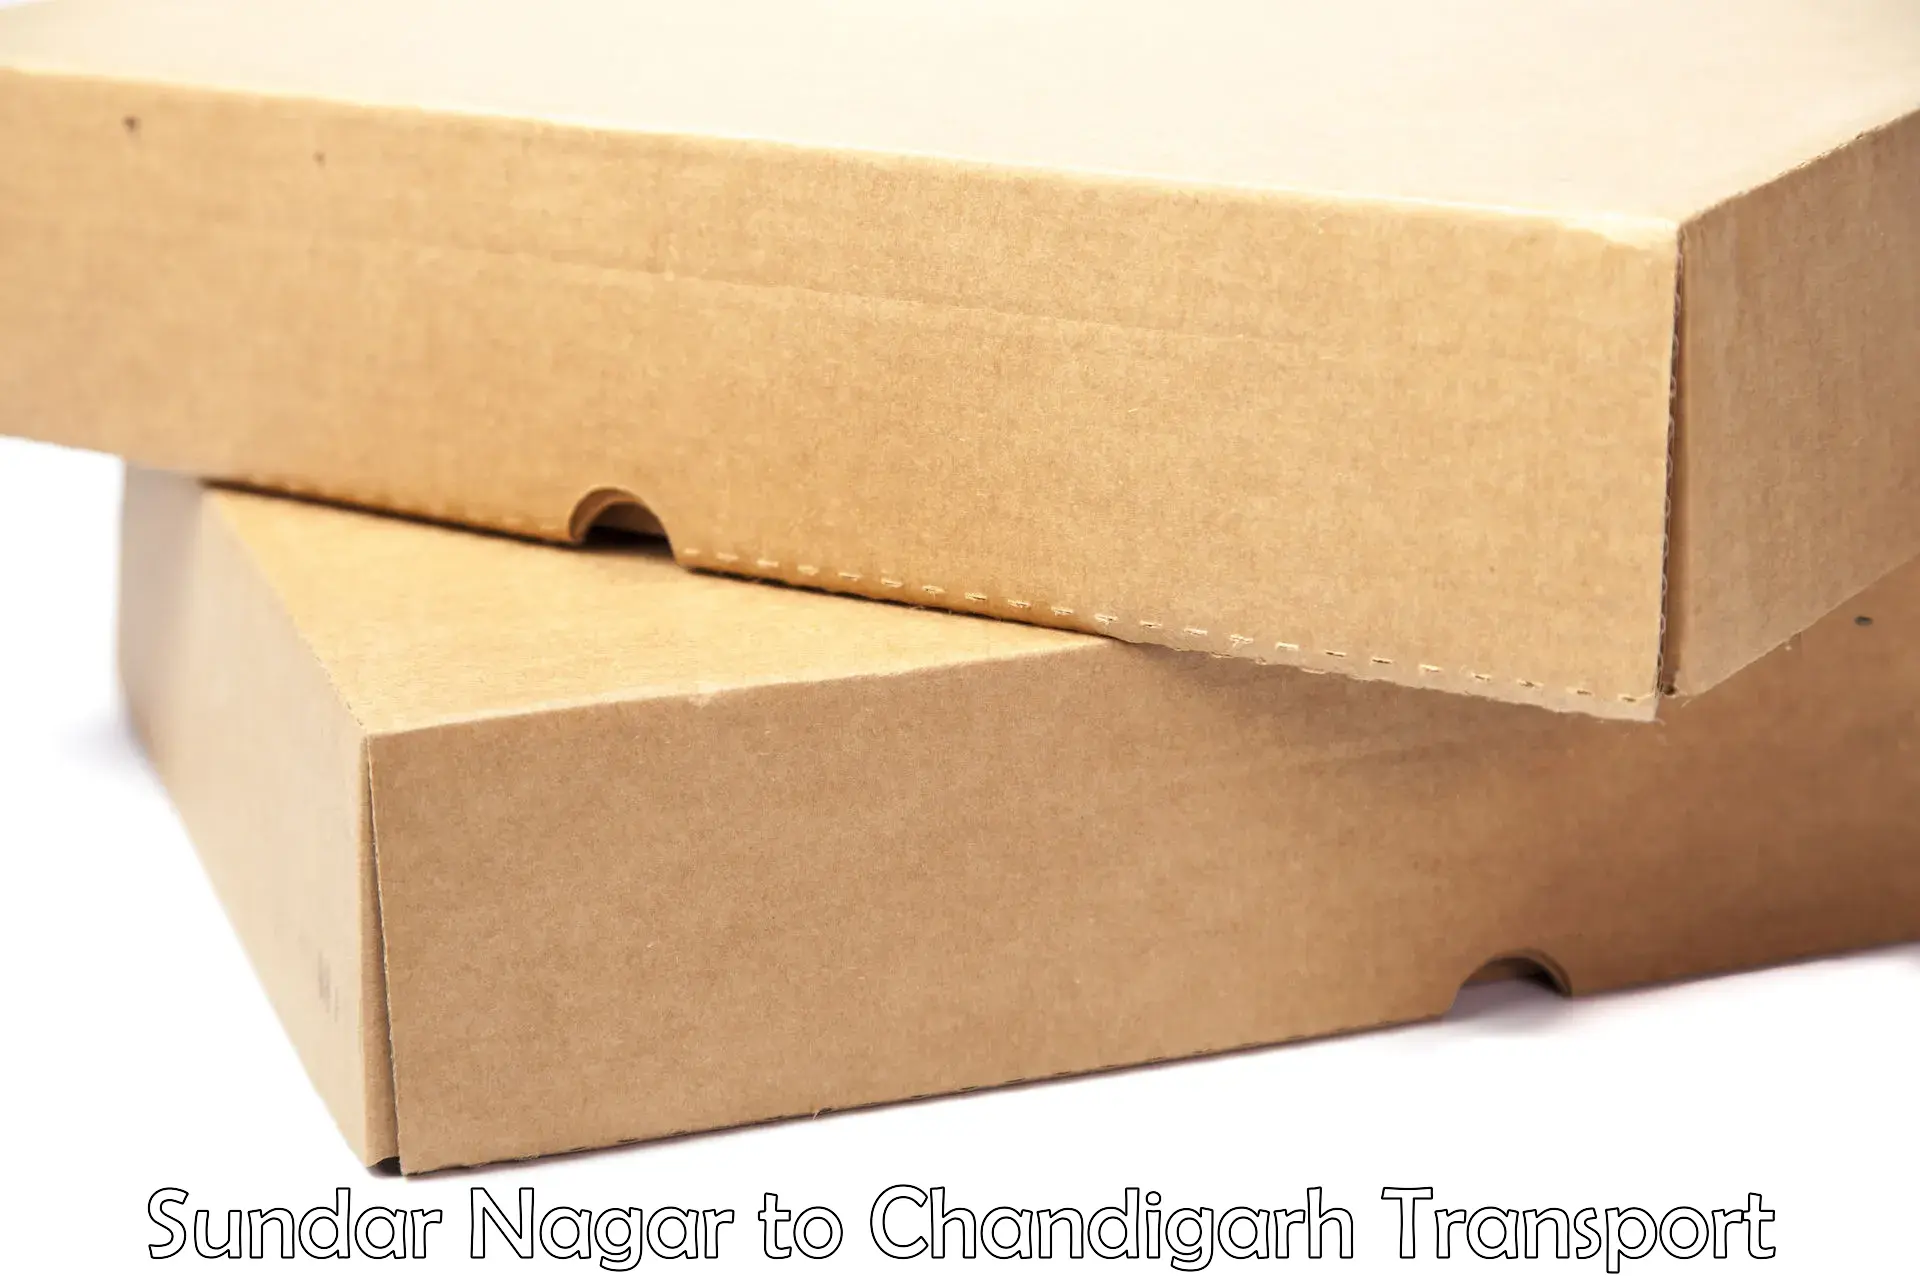 Shipping partner Sundar Nagar to Chandigarh